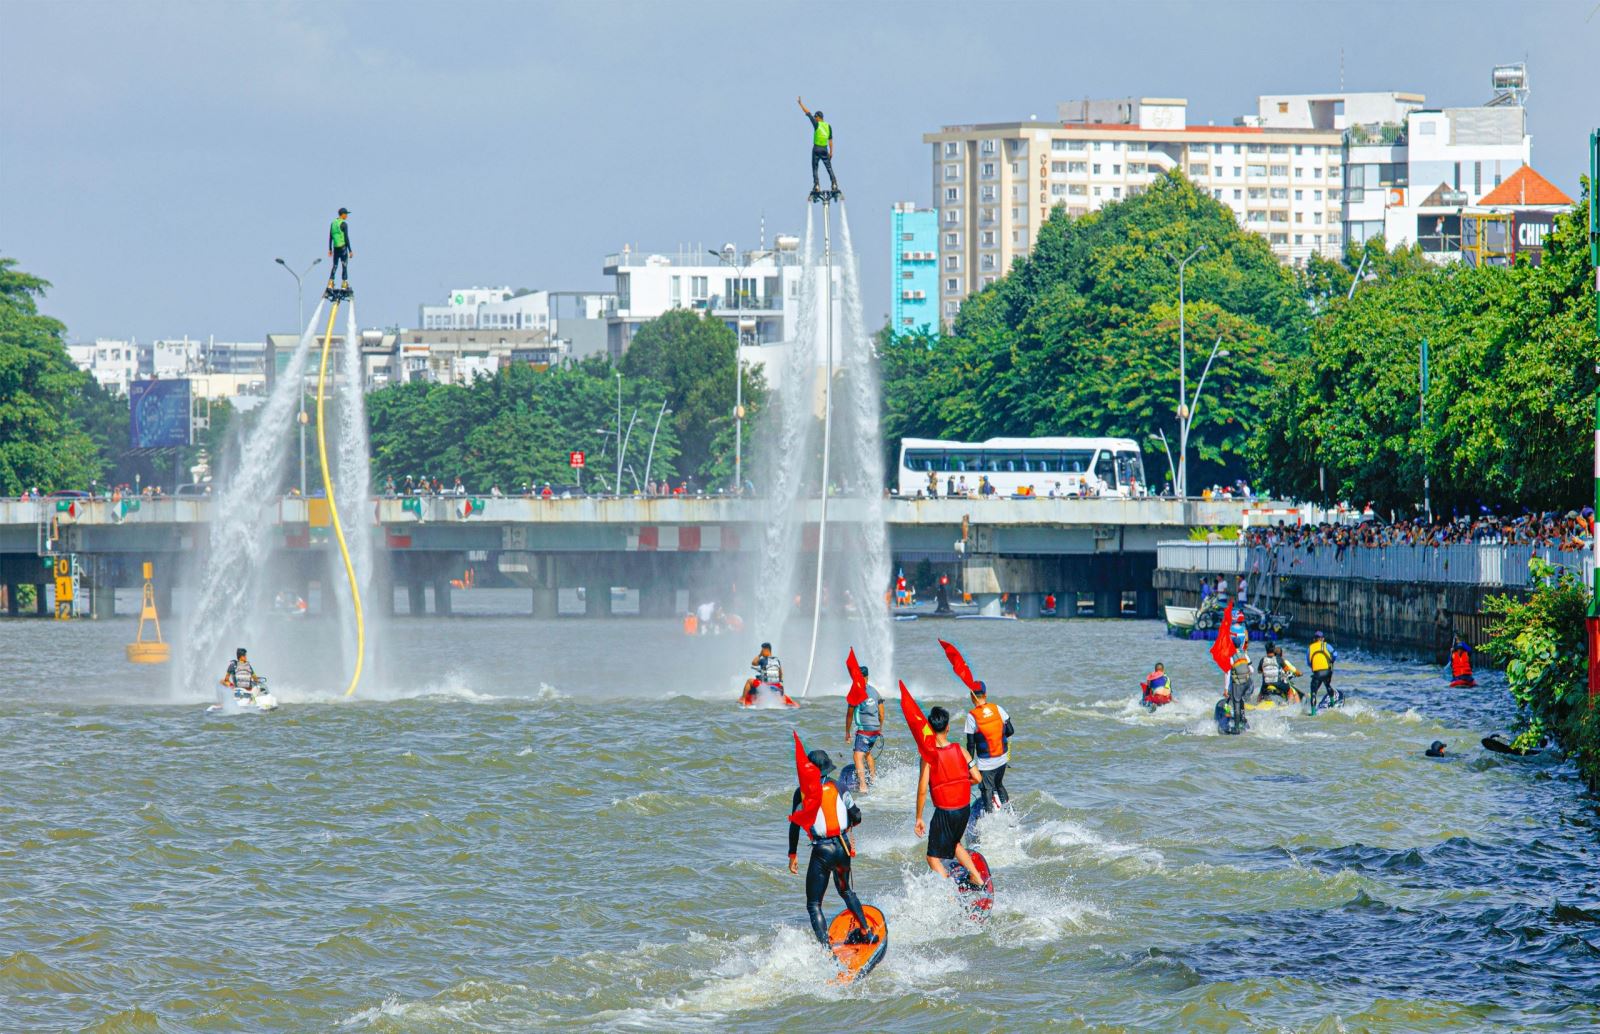 Nhộn nhịp mở tour du lịch gắn với Lễ hội sông nước TP Hồ Chí Minh